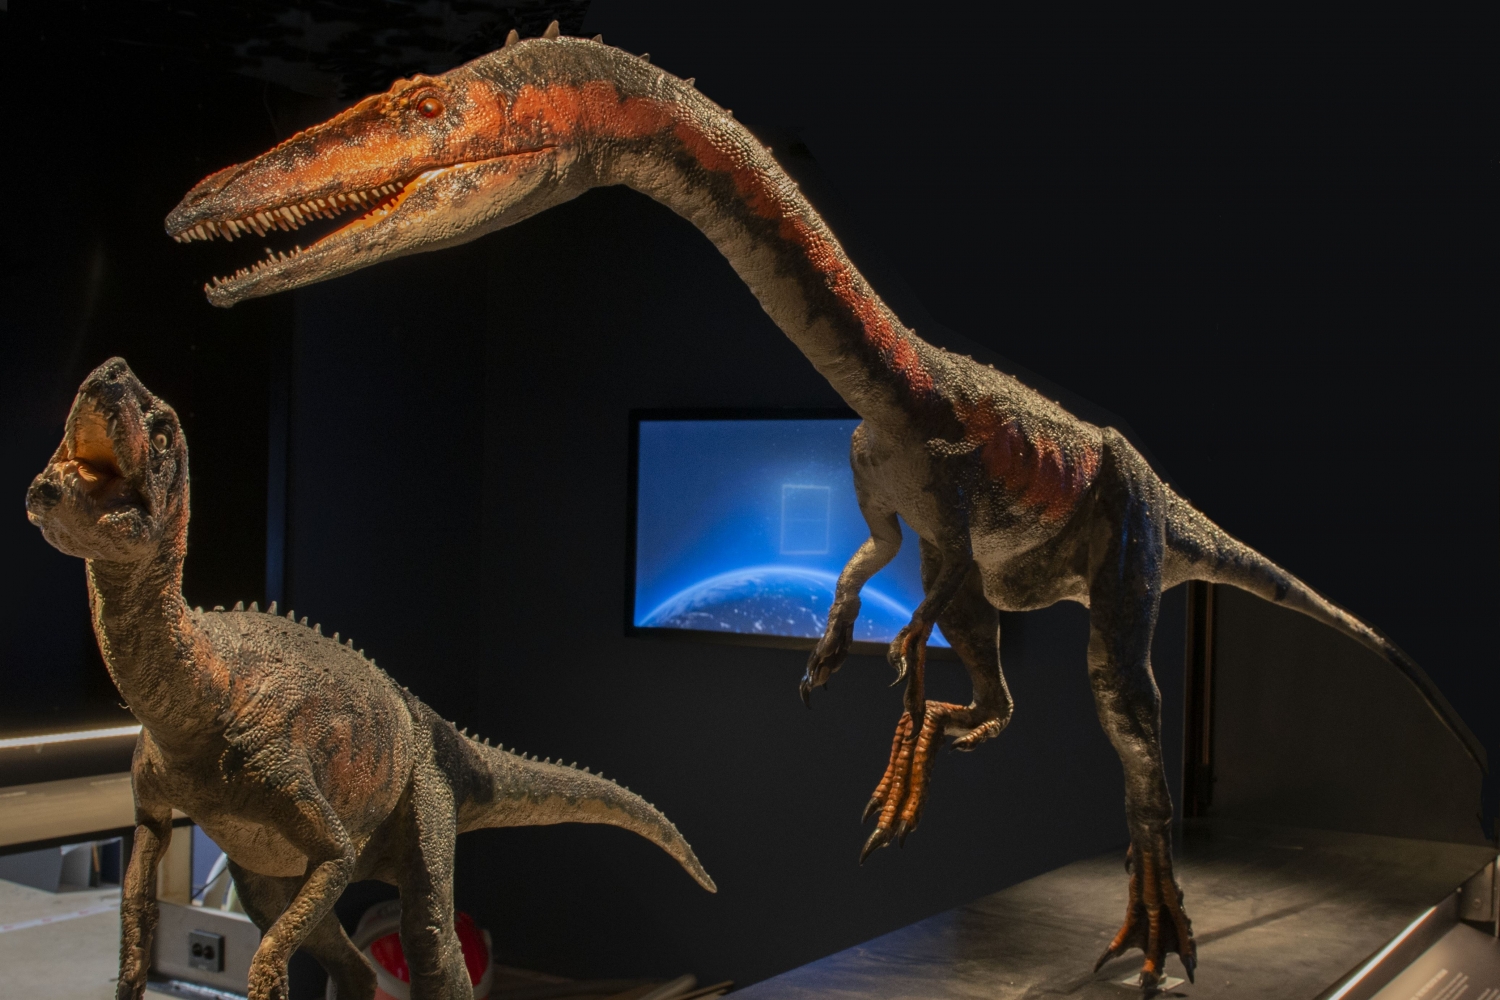 An ichtyosaurus fossil